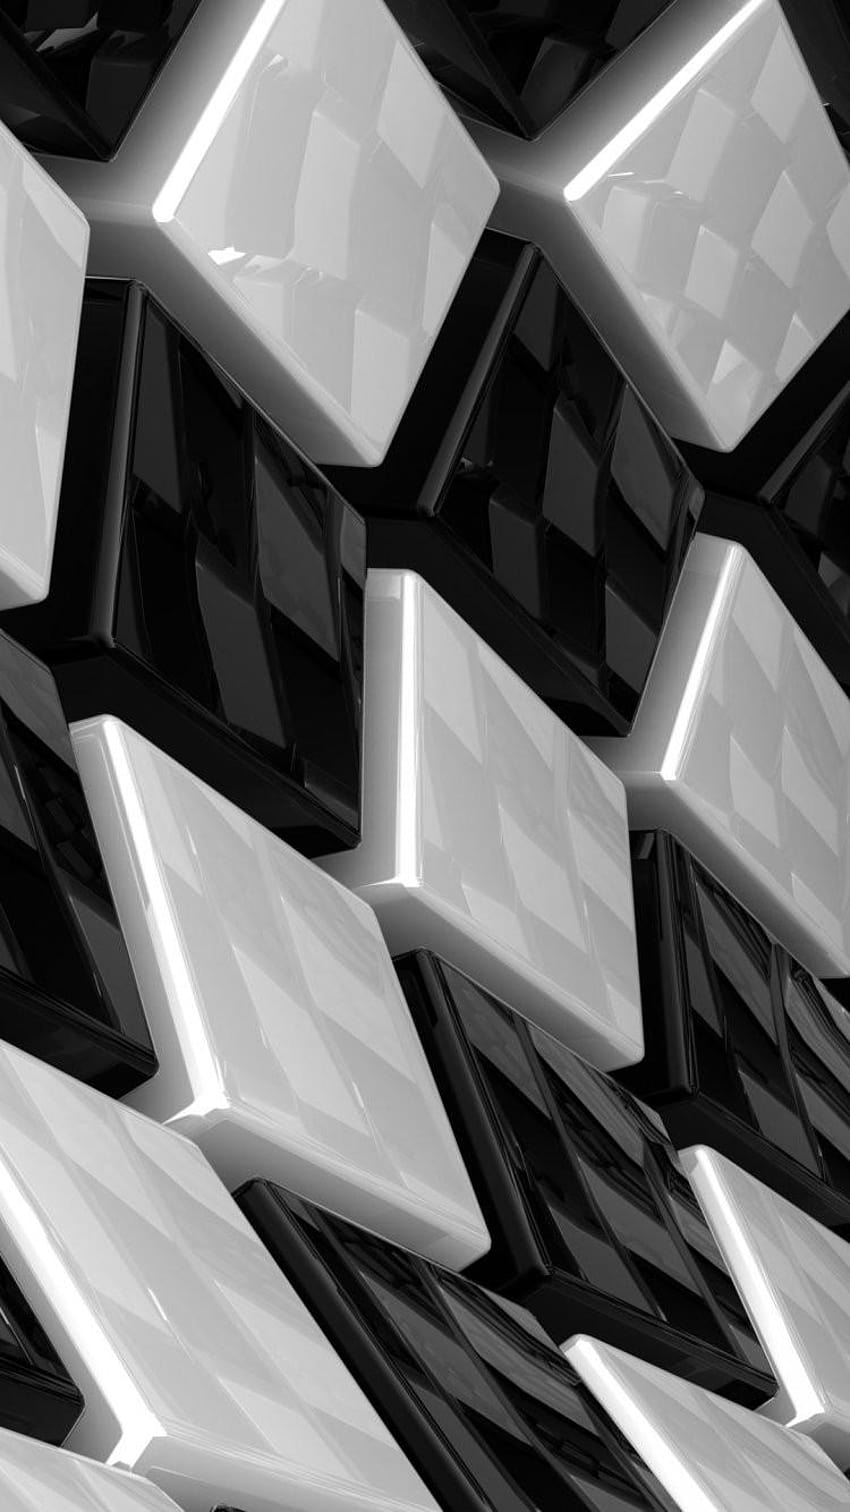 46+] Black and White 3D Wallpaper - WallpaperSafari